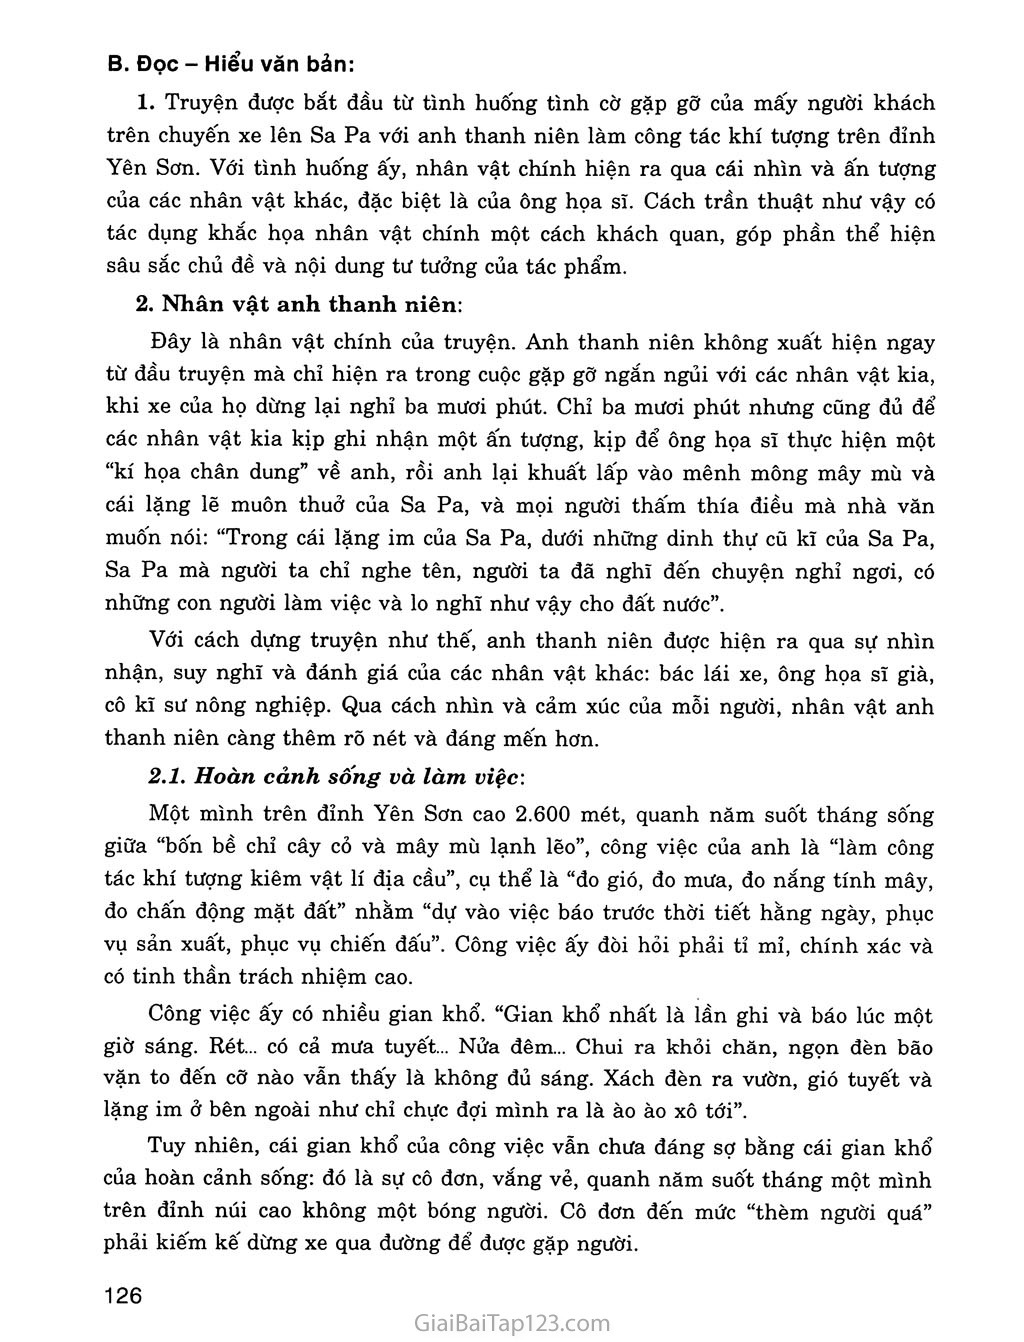 Lặng lẽ Sa Pa (trích) trang 2